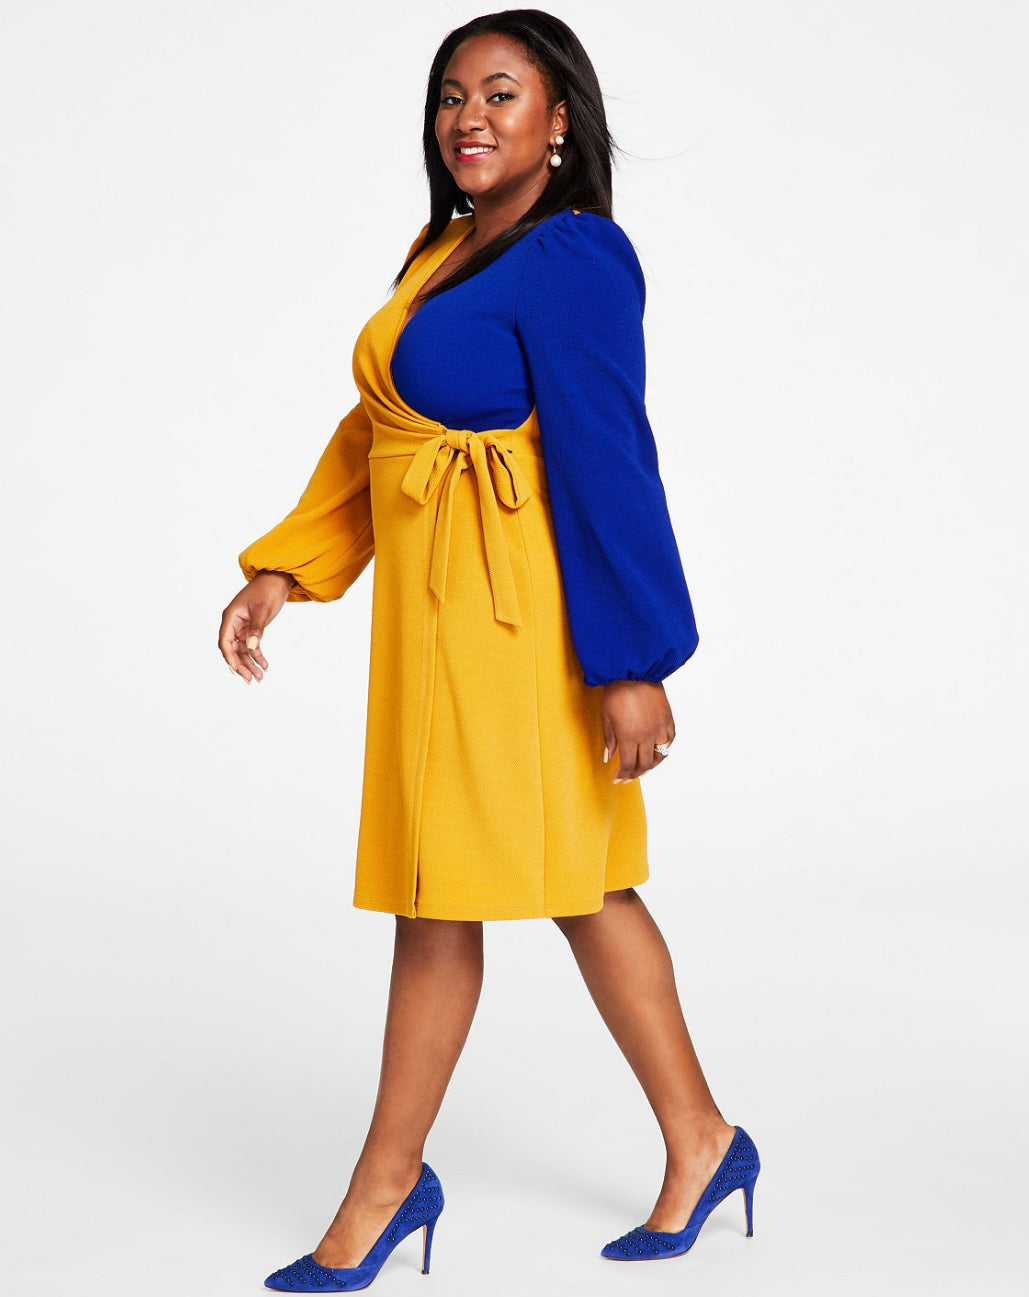 Kasper Women's Colorblocked Surplice Side-Tie Dress Gold/Royal Blue Size L